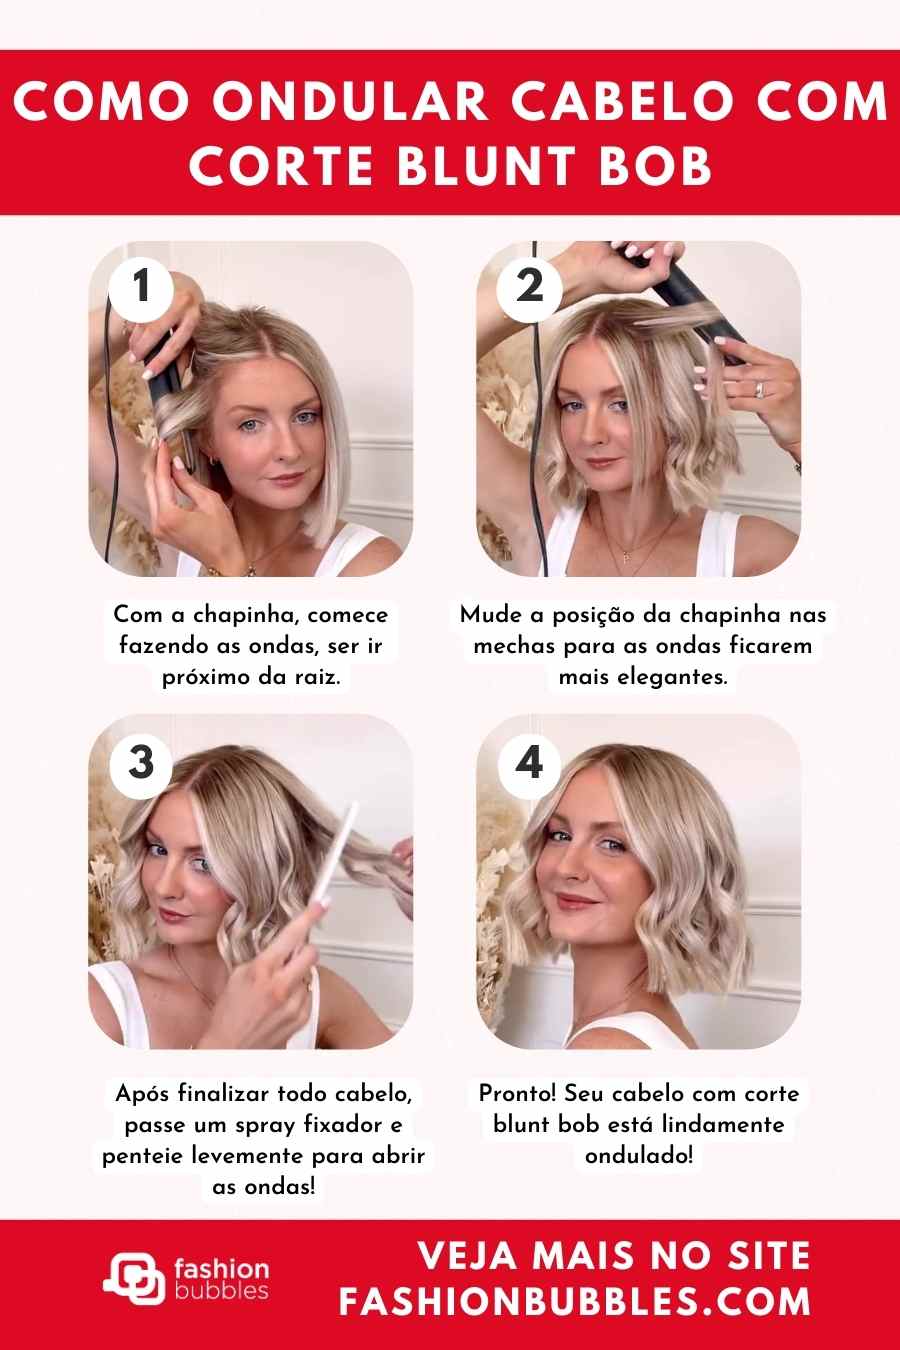 Tutorial de 4 passos sobre como enrolar o cabelo com um blunt bob.